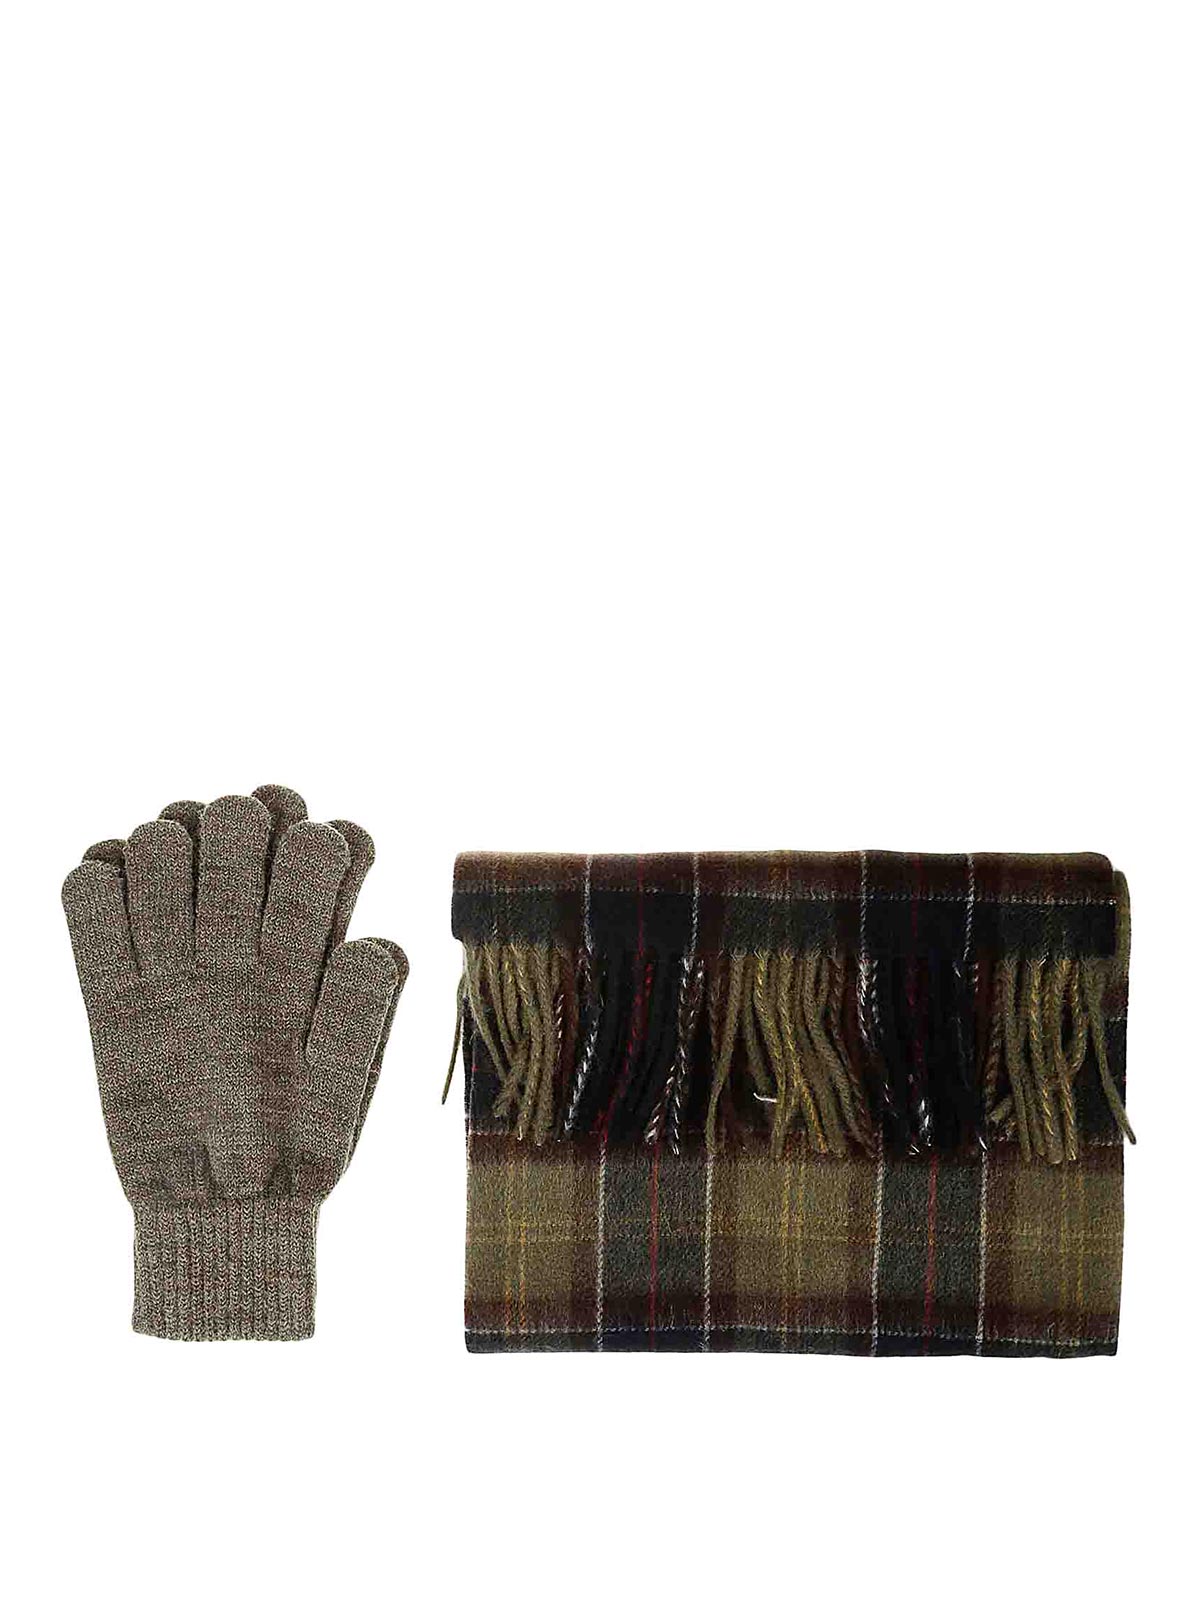 Shop Barbour Tartan Scarf Glove Gift Set In Dark Green